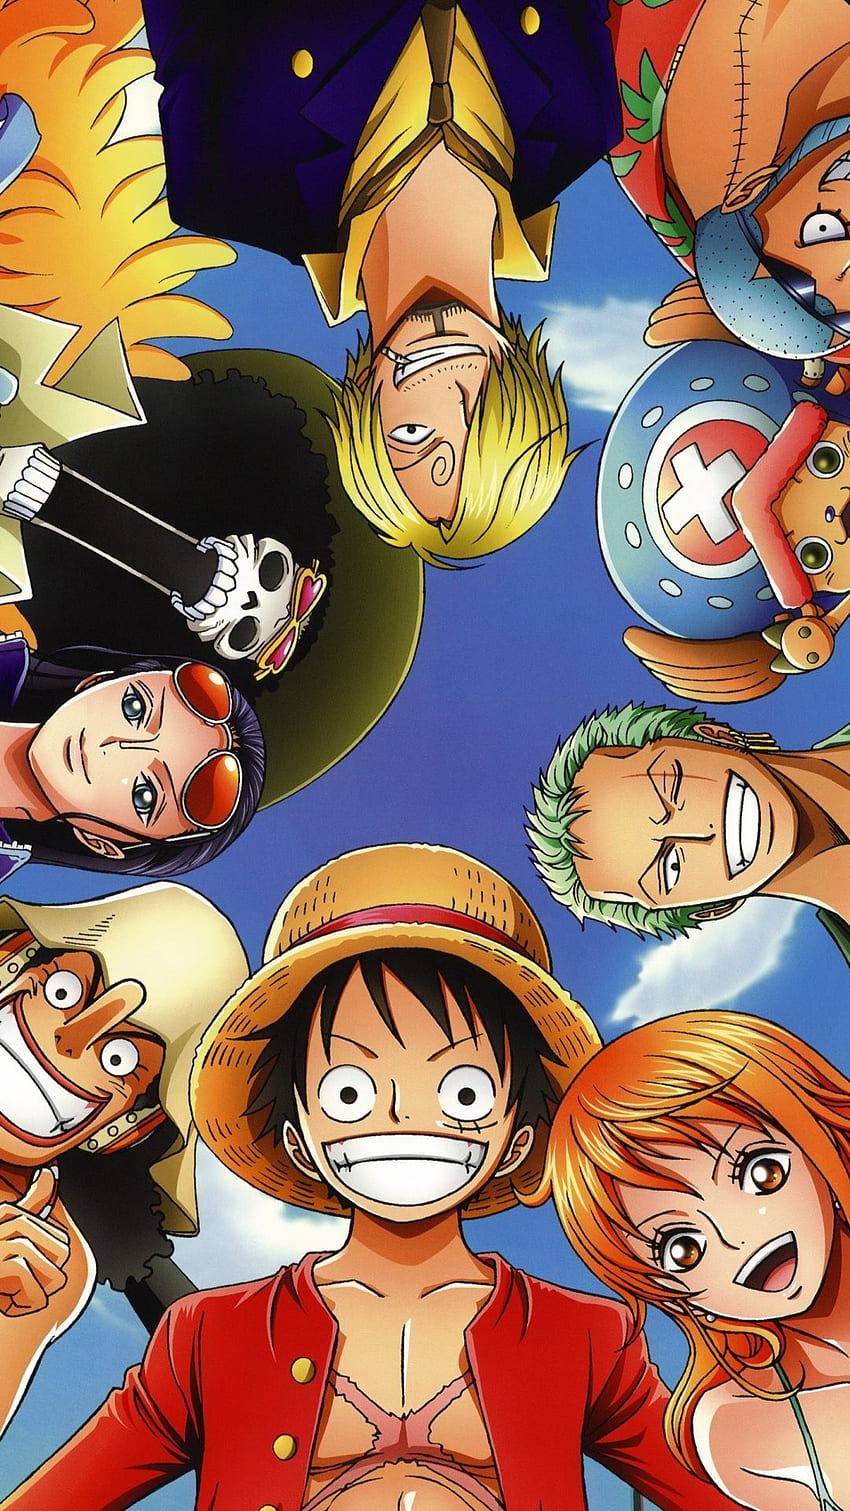 Hãy khám phá một thế giới đầy tưởng tượng và phiêu lưu trong bộ anime One Piece! Hình nền liên quan sẽ giúp bạn bước vào cuộc phiêu lưu của Luffy và đồng hành cùng anh ta tạo nên những kỷ niệm tuyệt vời!